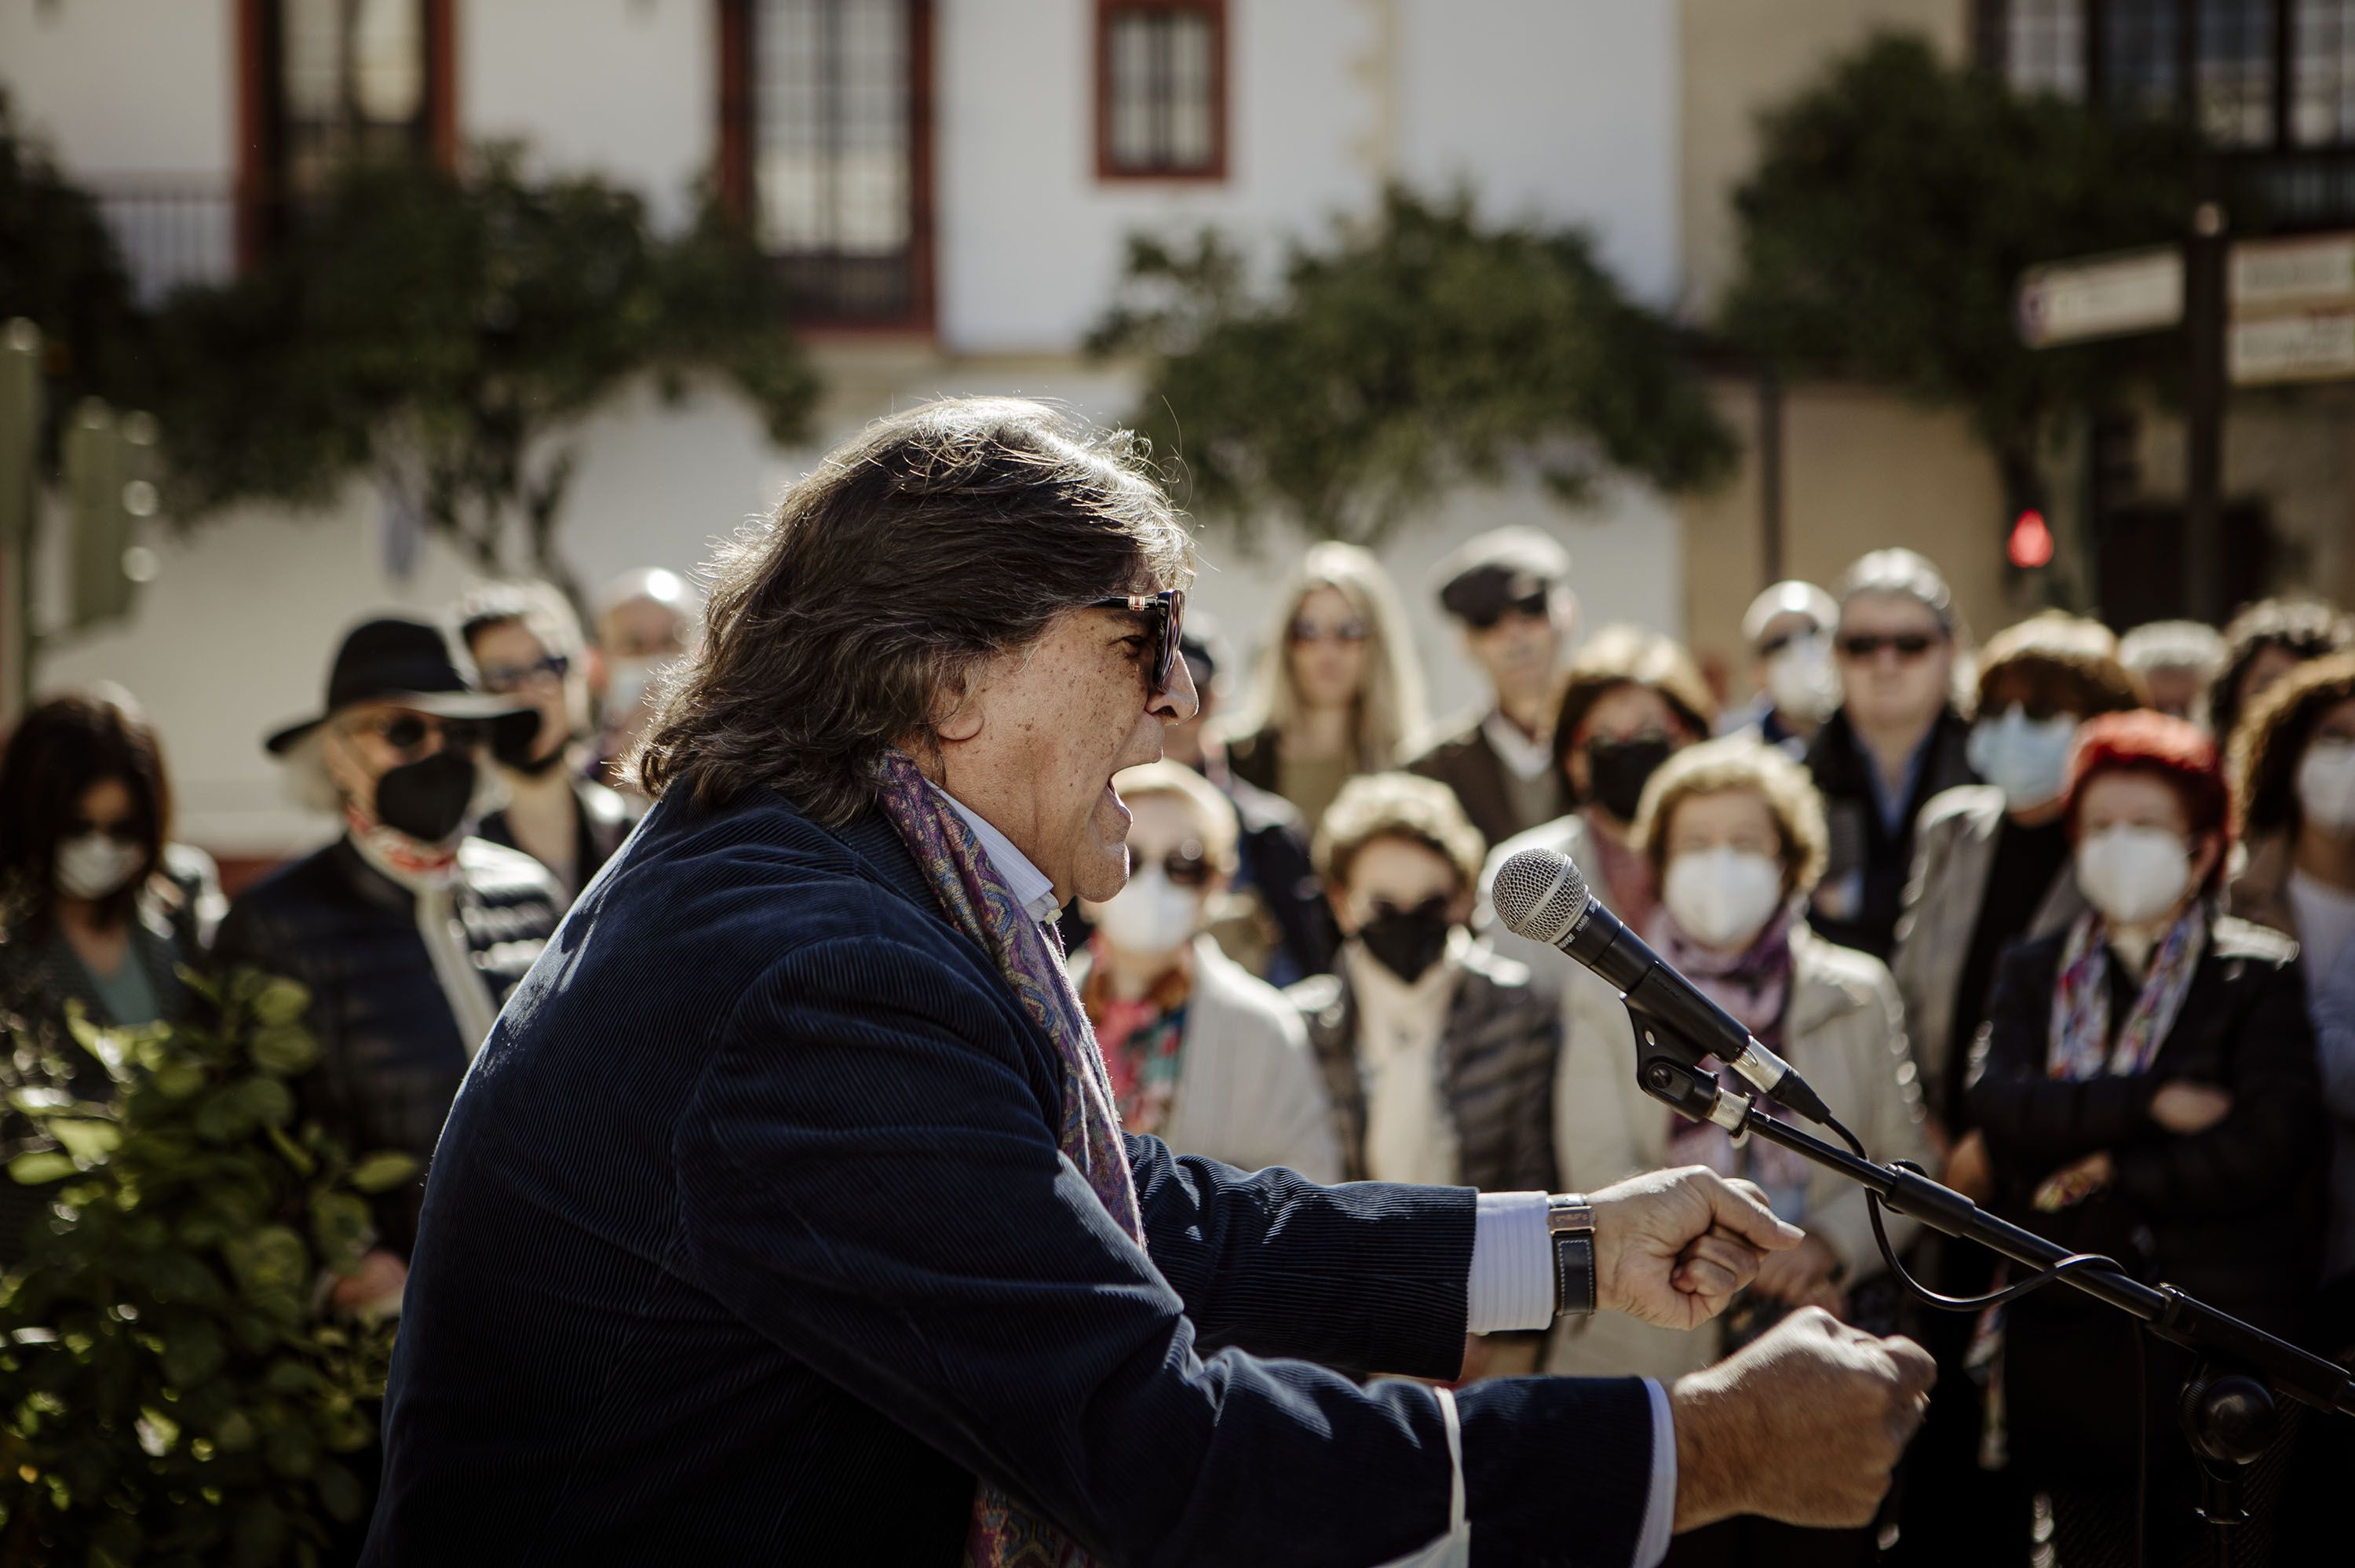 Un paseo popular, flamenco y literario para recordar a Caballero Bonald: "Pepe estaría feliz de estar aquí". En la imagen, Vicente Soto.